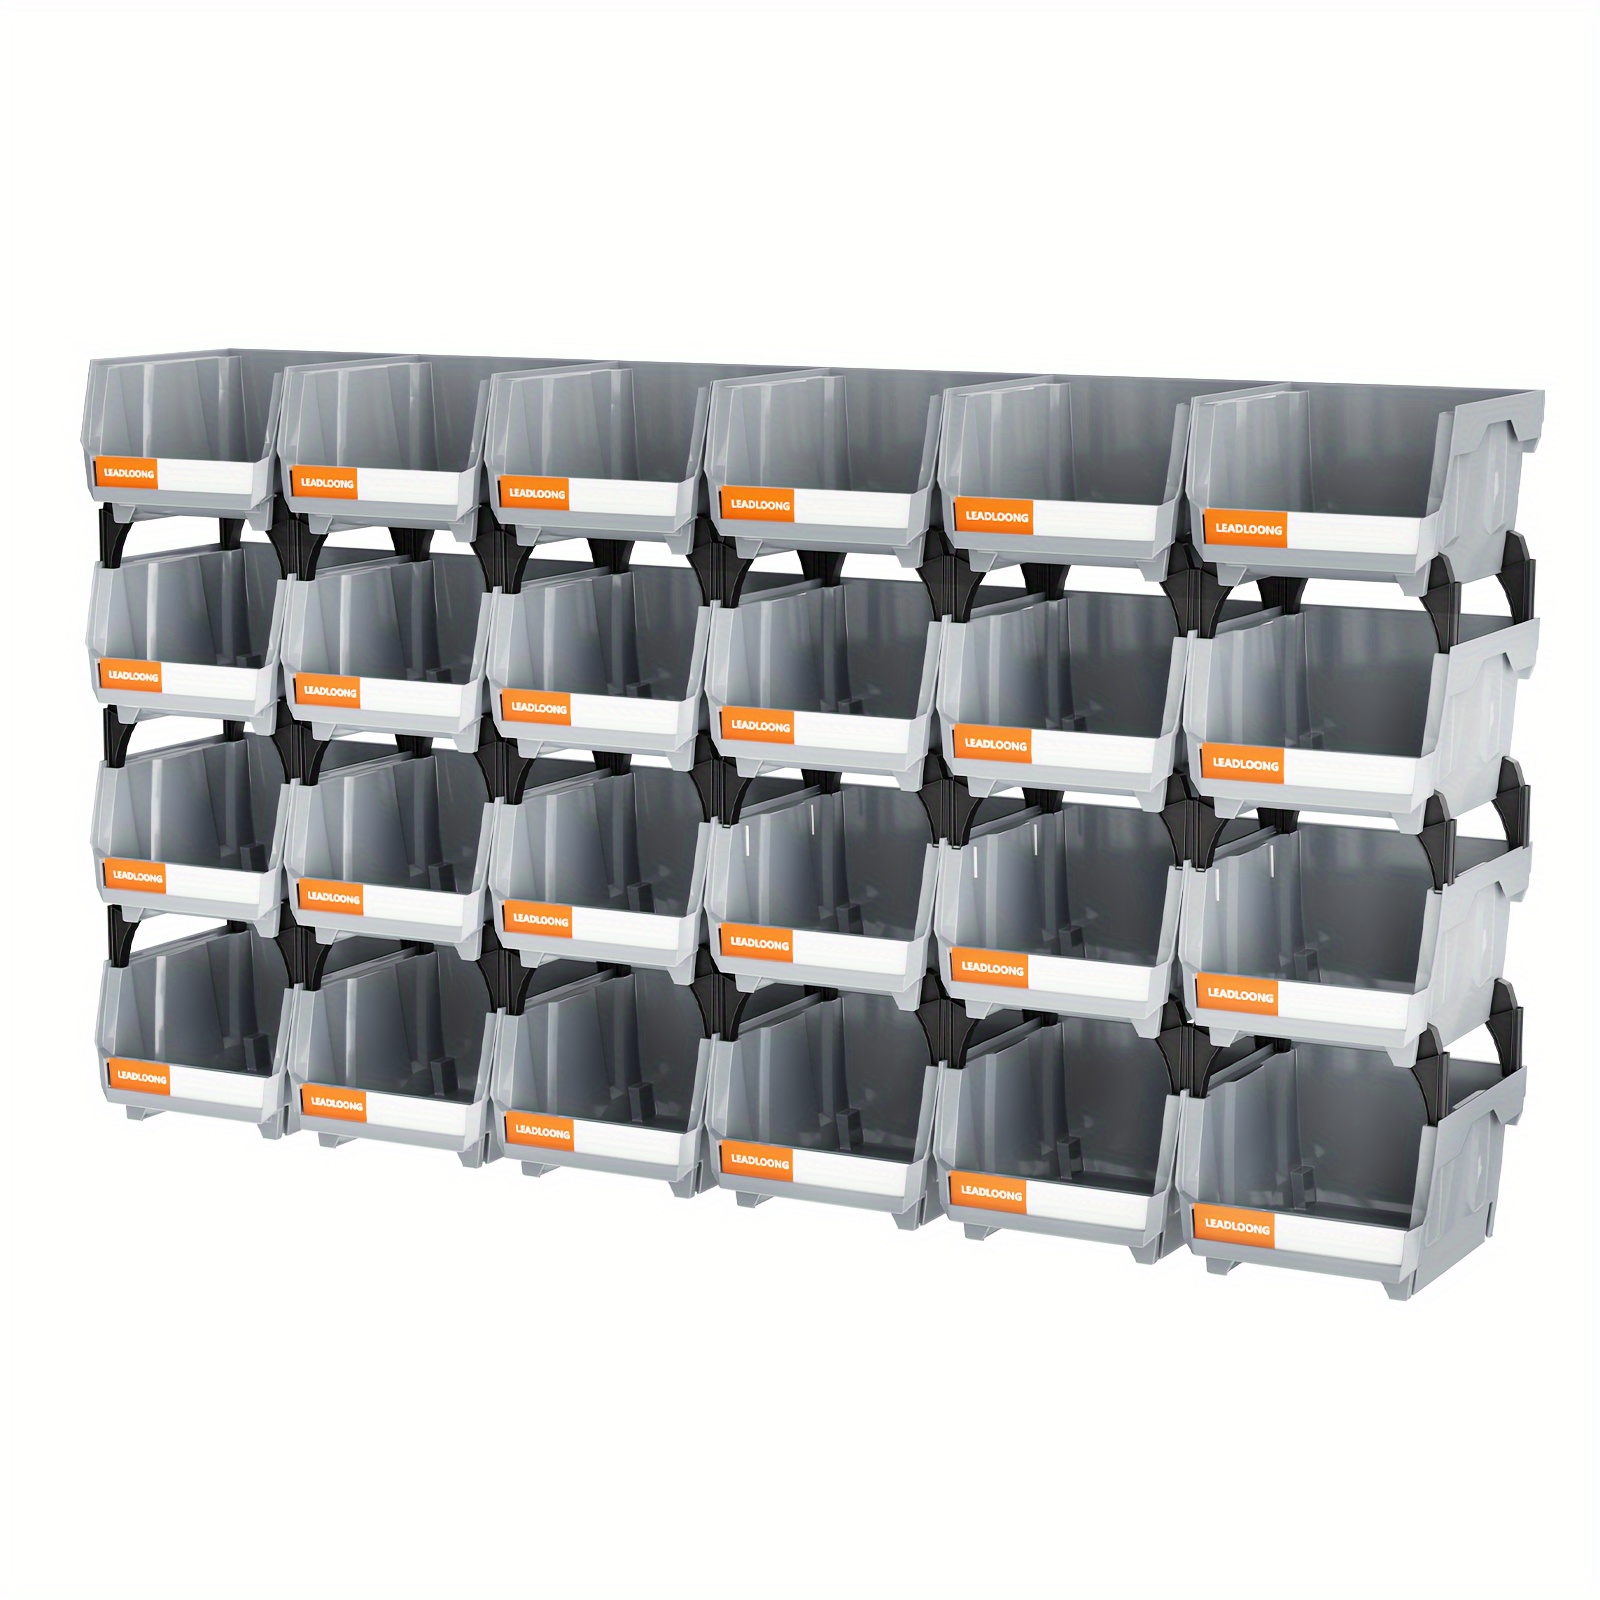 

24pcs Gray Stackable Tool Box 13.7x10.5x7.8cm/5x4x3inch Garage Storage Container, Garage Tool Storage And Organizer Box, Garage Supplies, Garage Organization And Storage Supplies Car Accessories